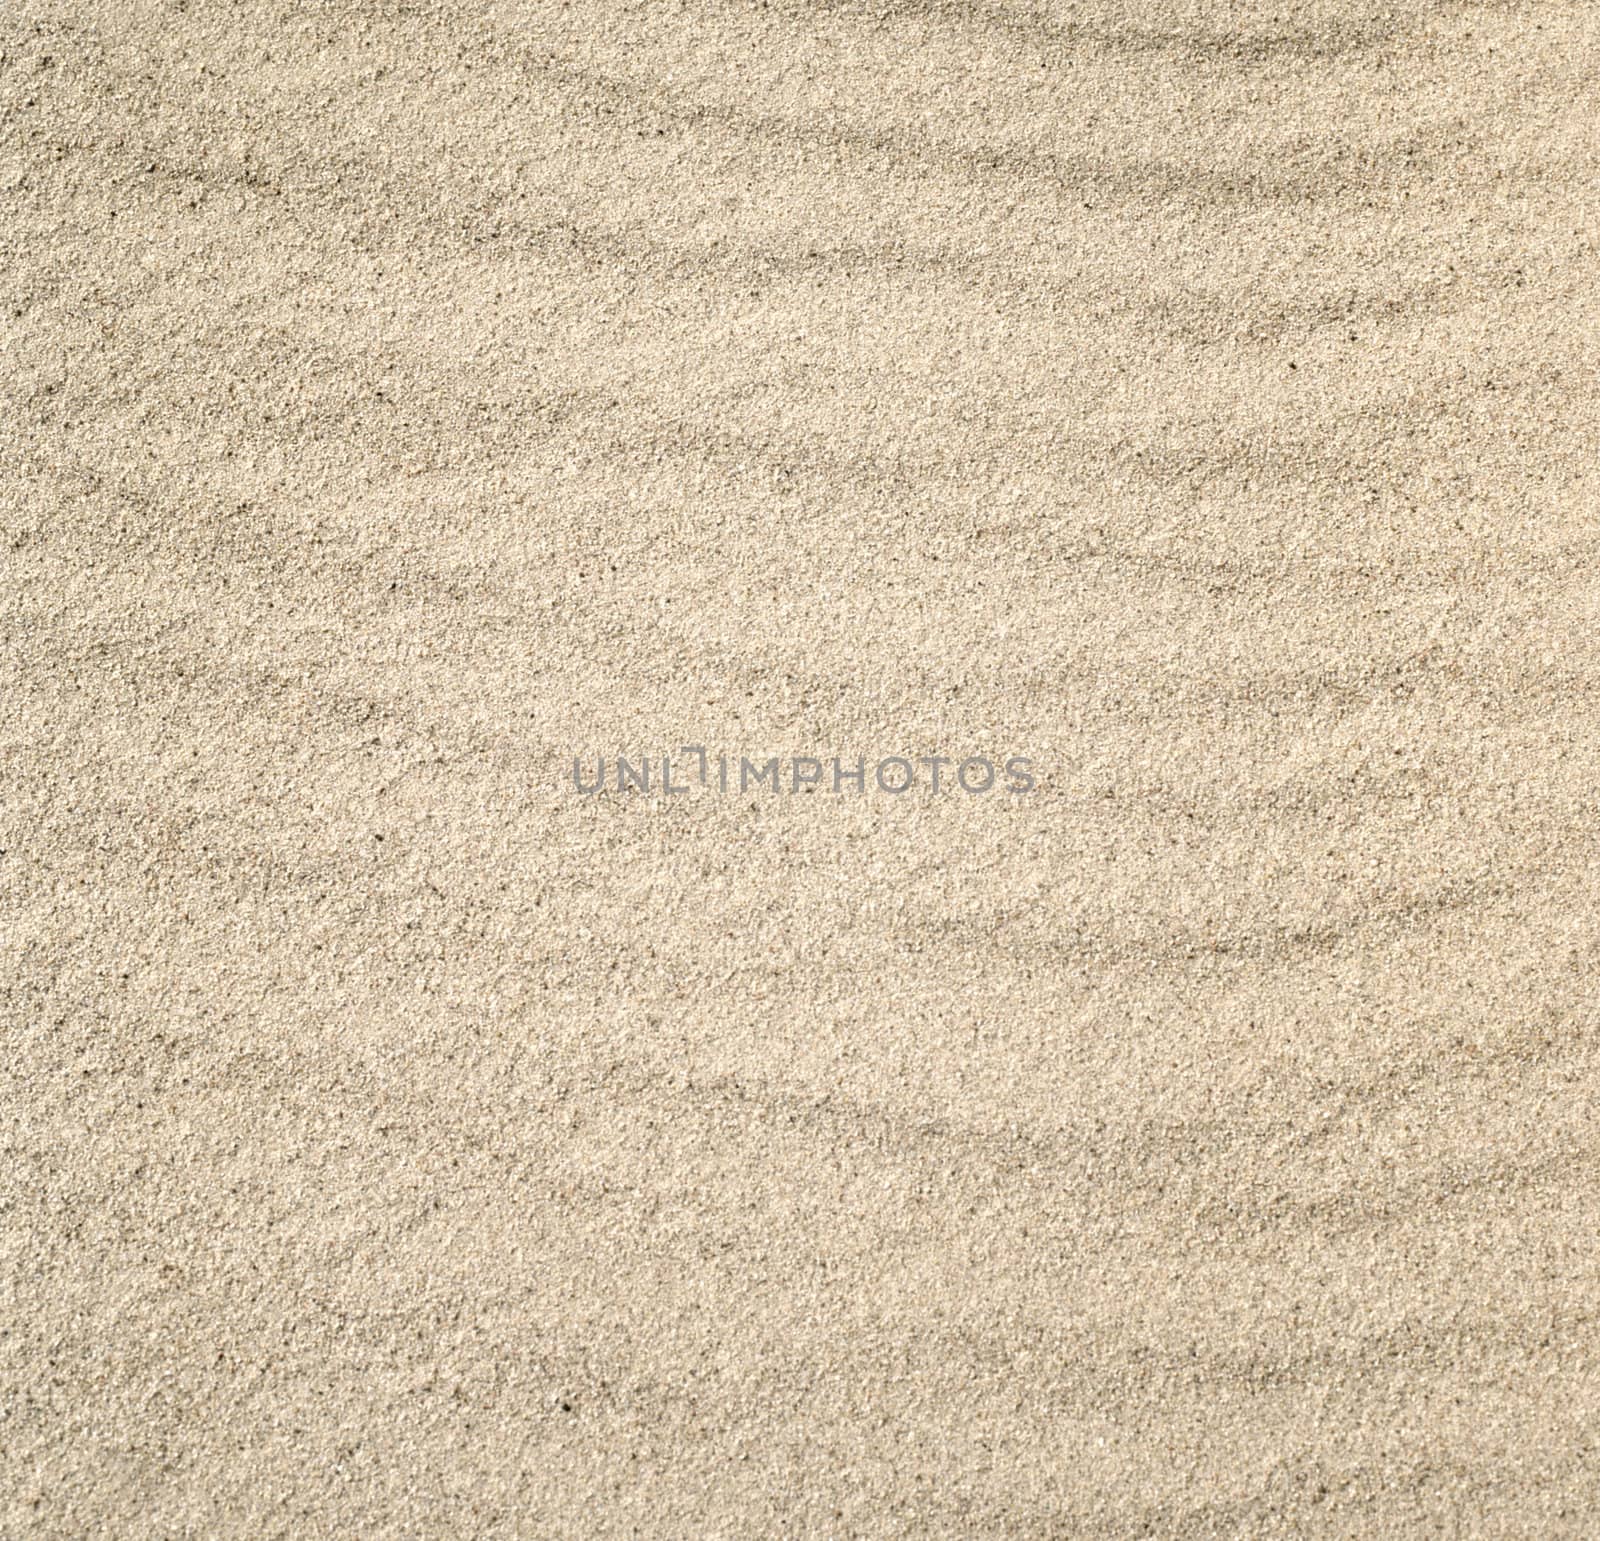 beautiful sand background by ozaiachin